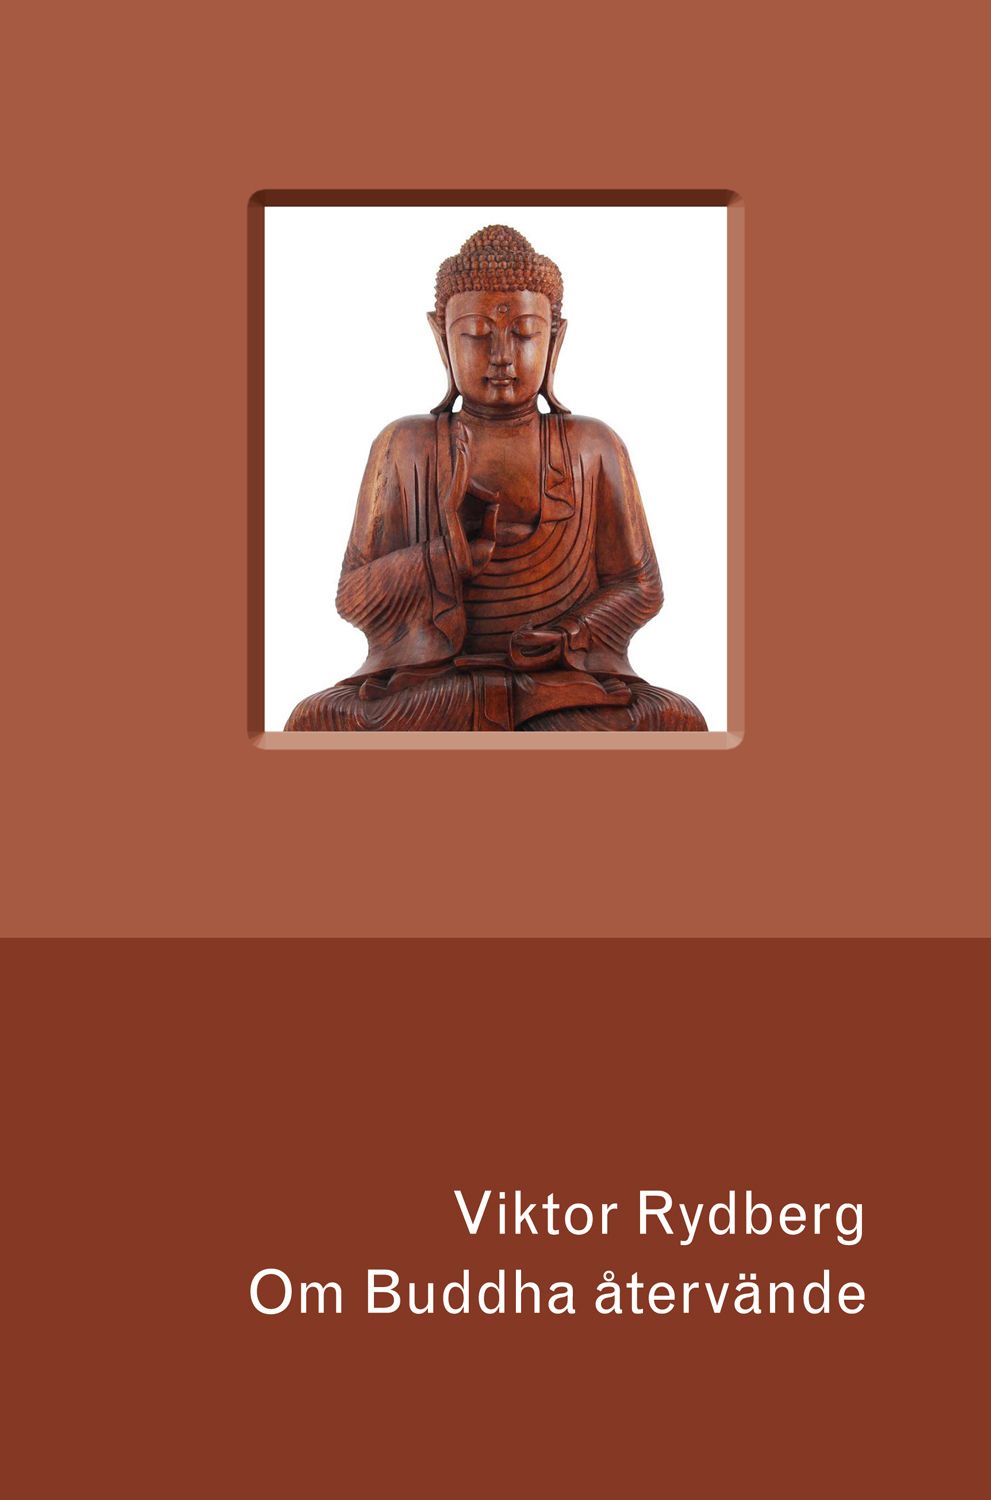 Om Buddha återvände, e-bok av Viktor Rydberg